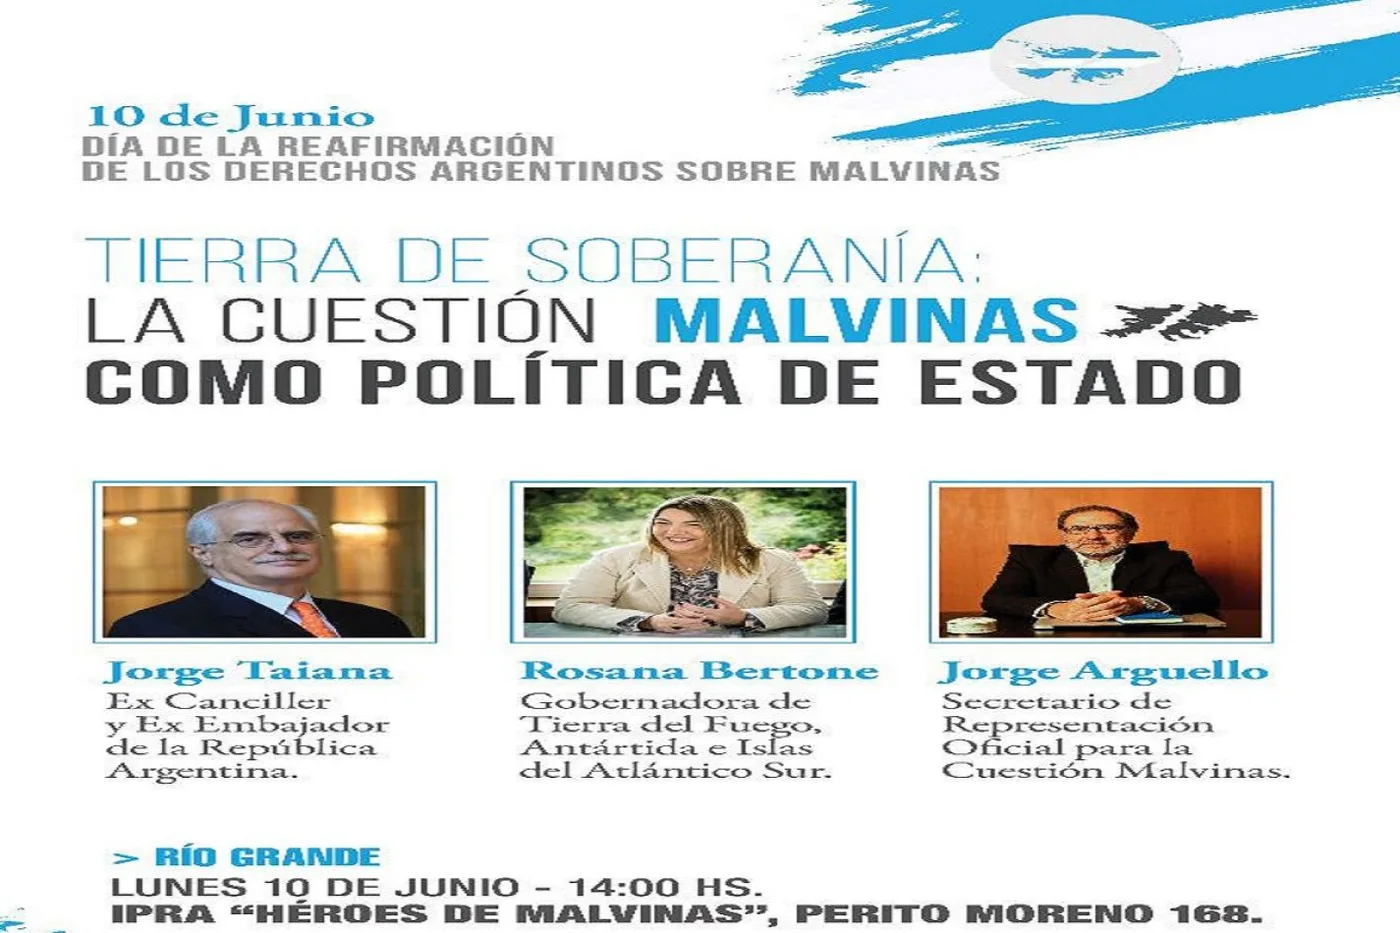 La Cuestión Malvinas como Política de Estado